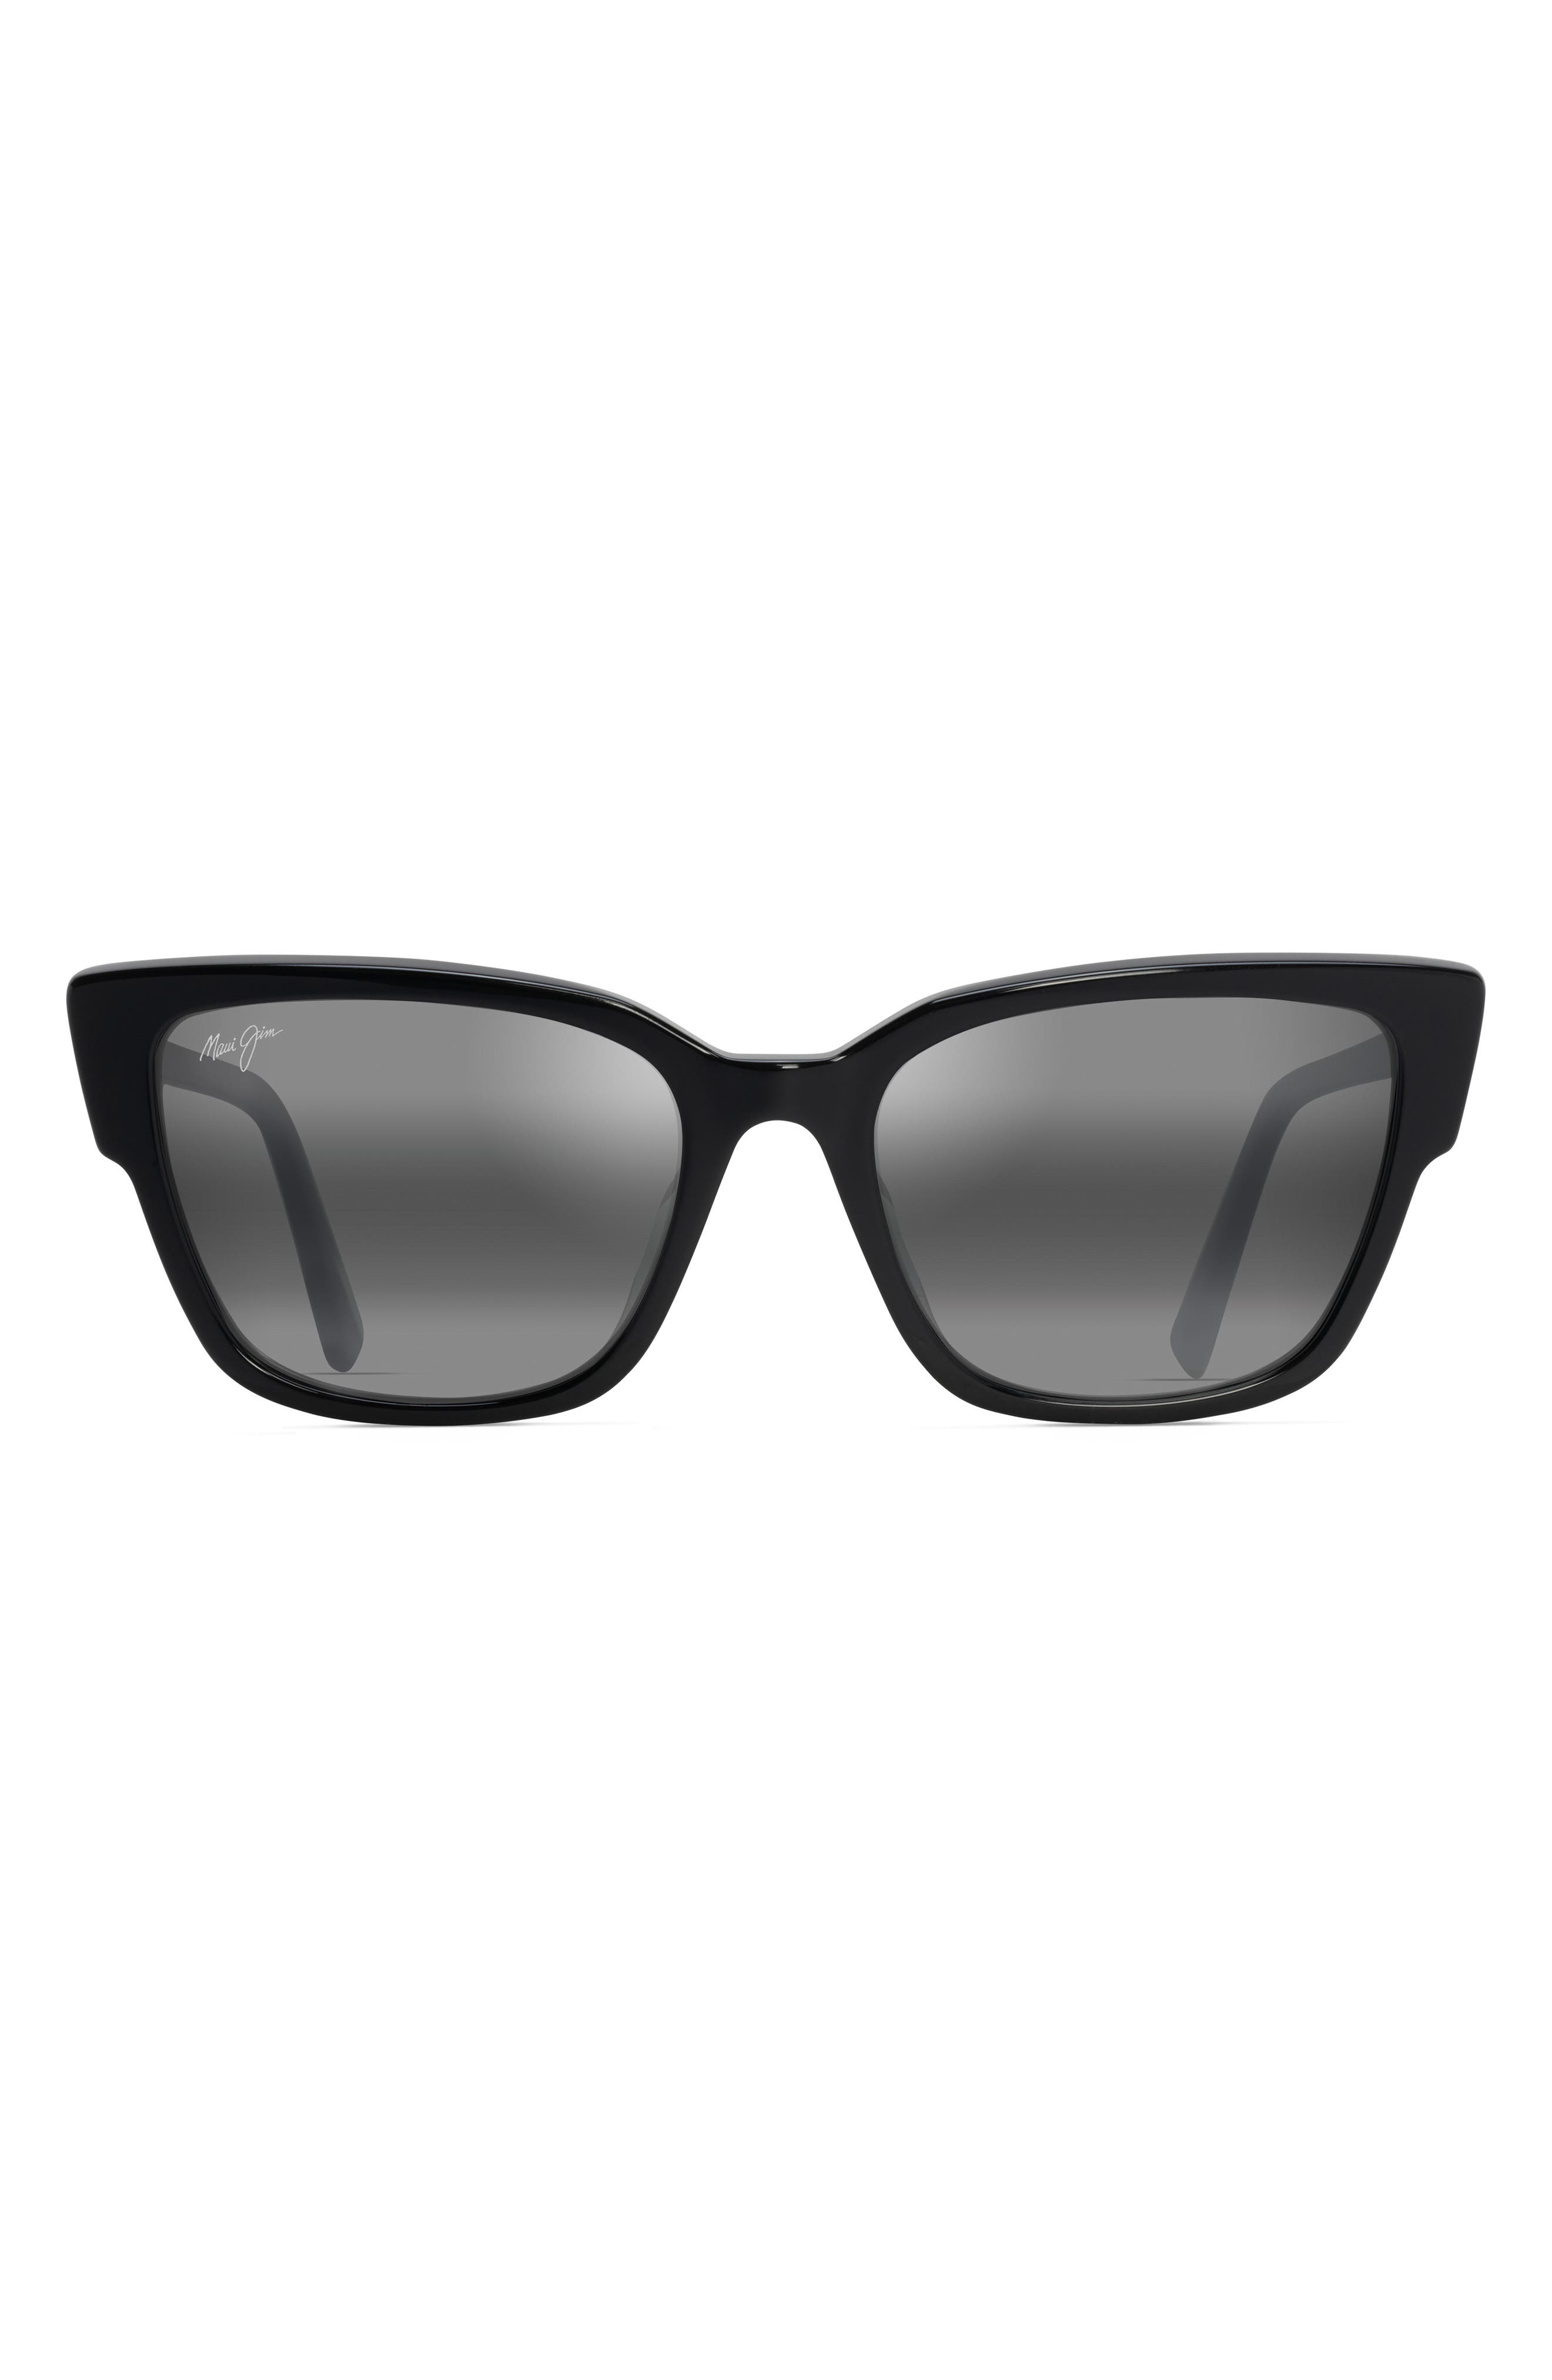 激安価格と即納で通信販売 マウイジム メンズ サングラス アイウェア アクセサリー Kou 55mm PolarizedPlus2 Cat Eye  Sunglasses BLACK GLOSS